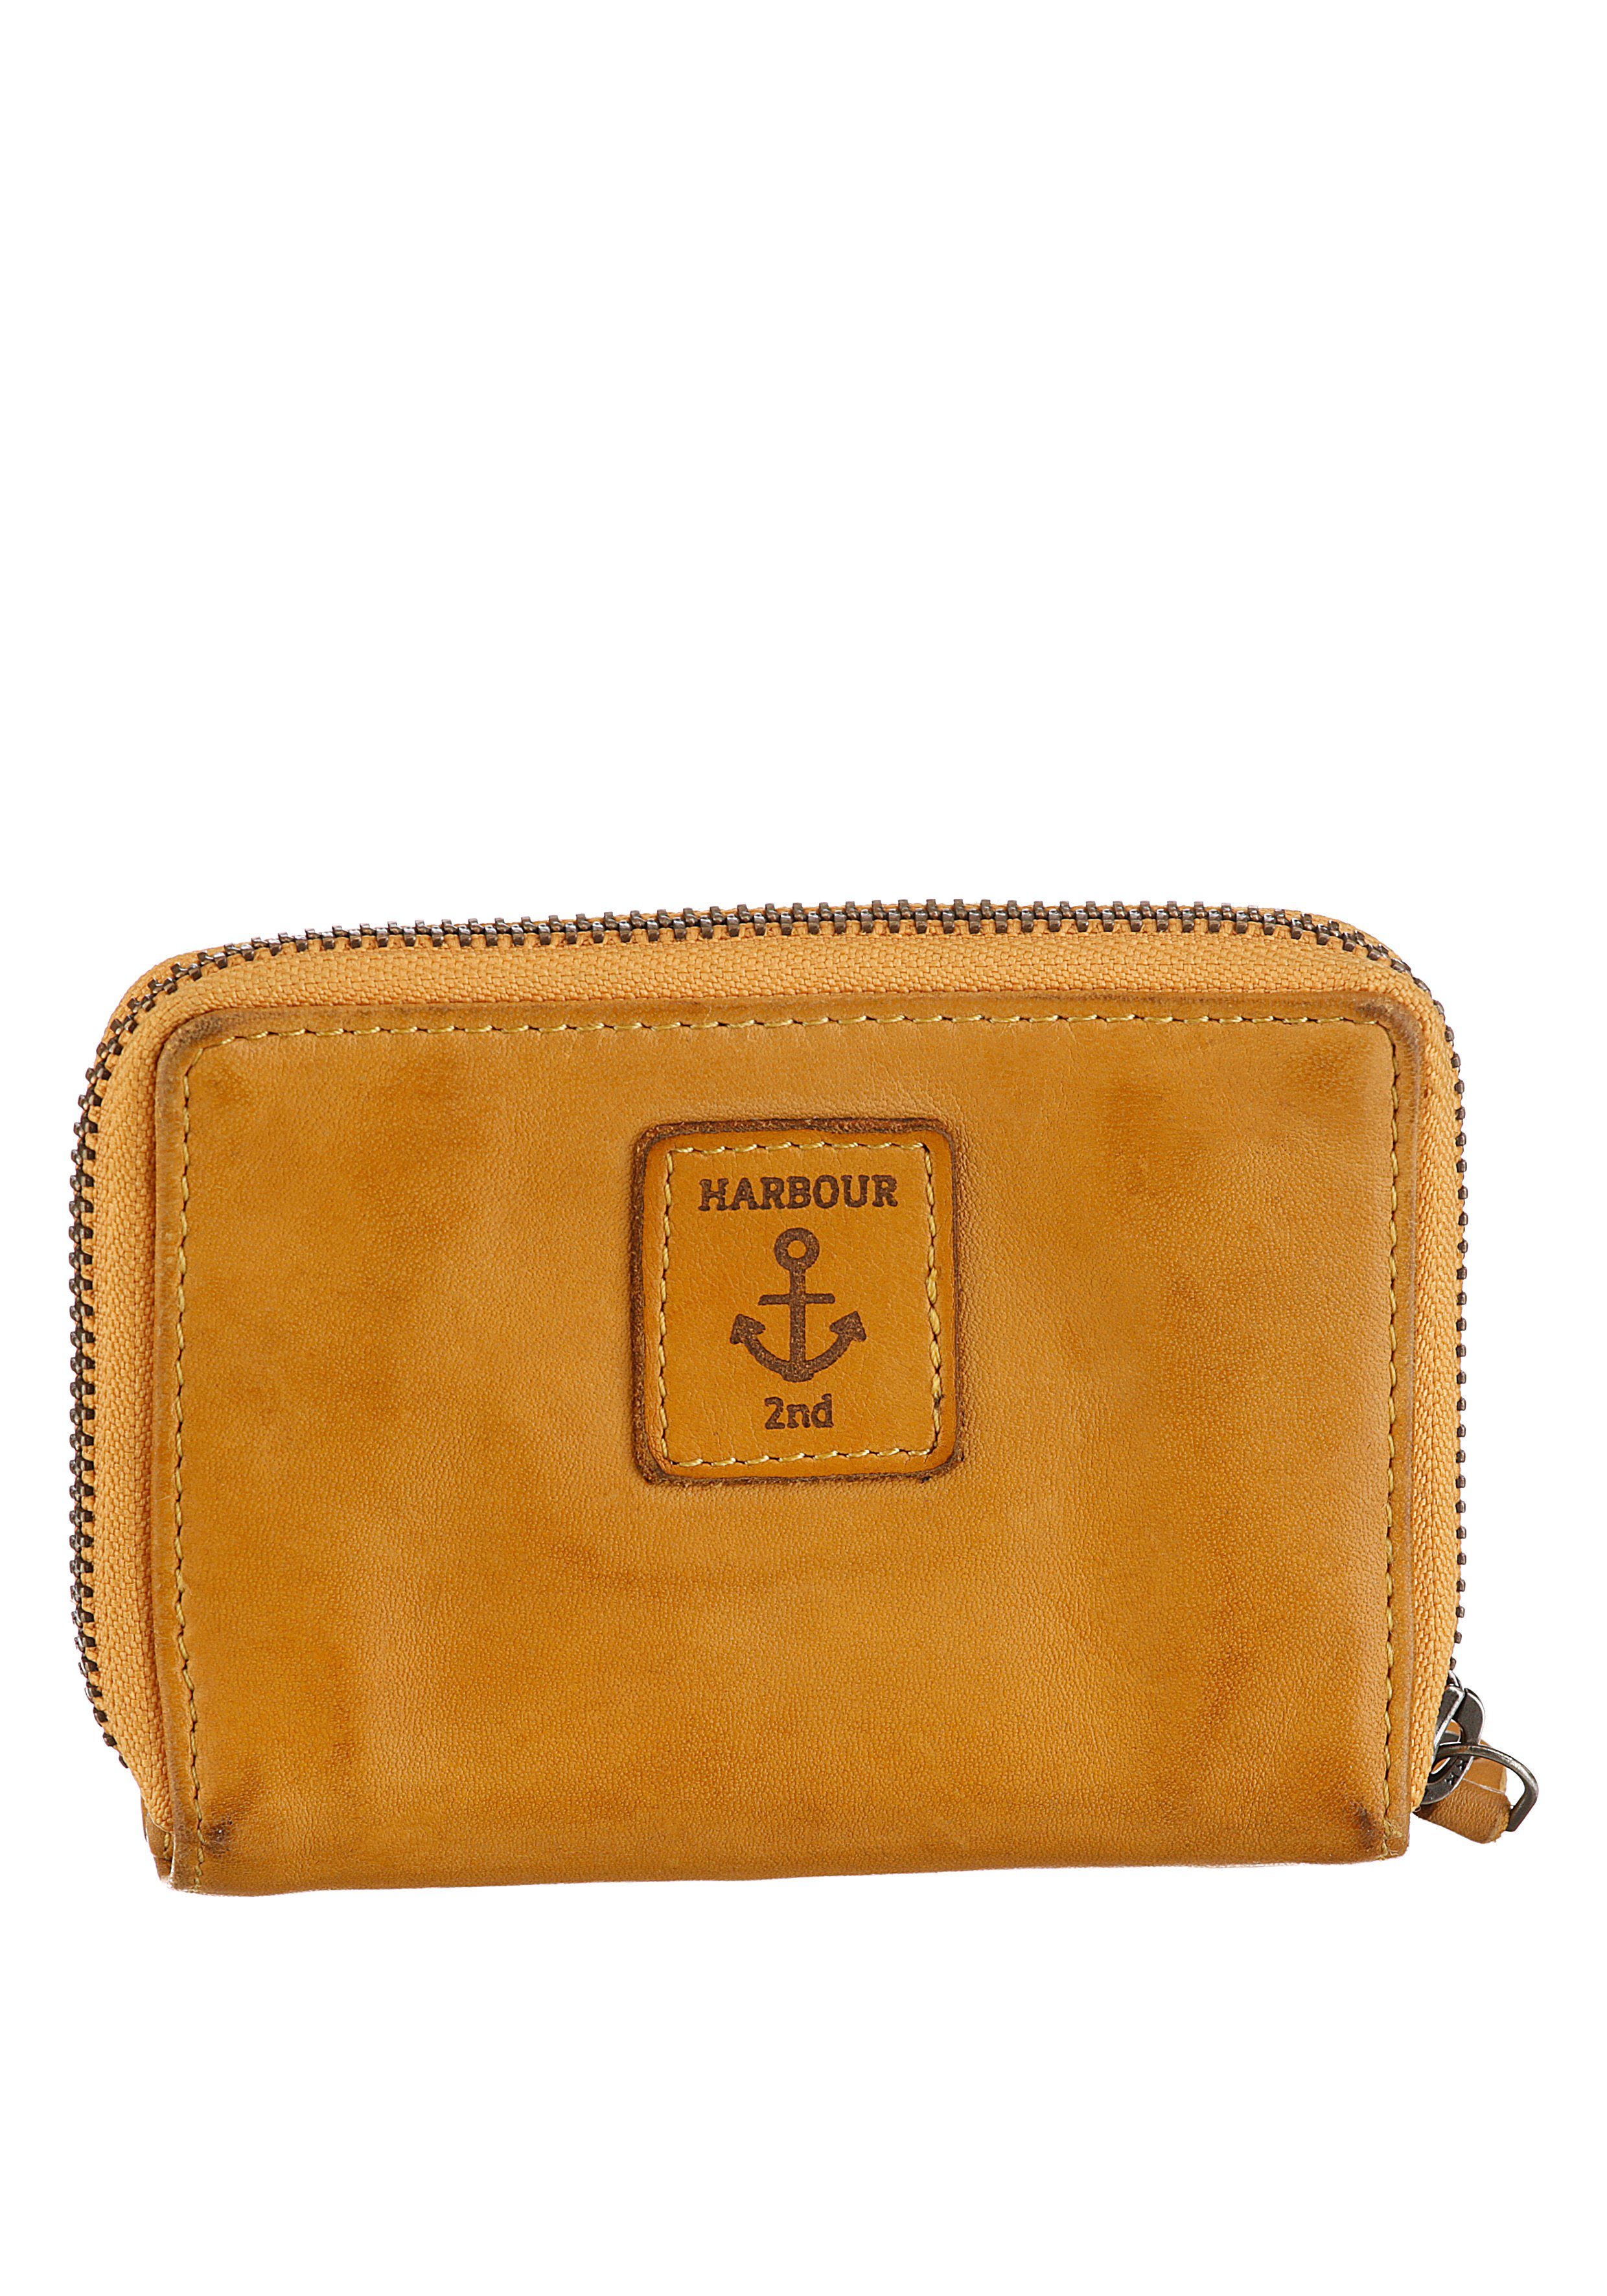 HARBOUR Harbour mit RFID-Technologie Wallet Geldbörse 2nd mustard Is, Second